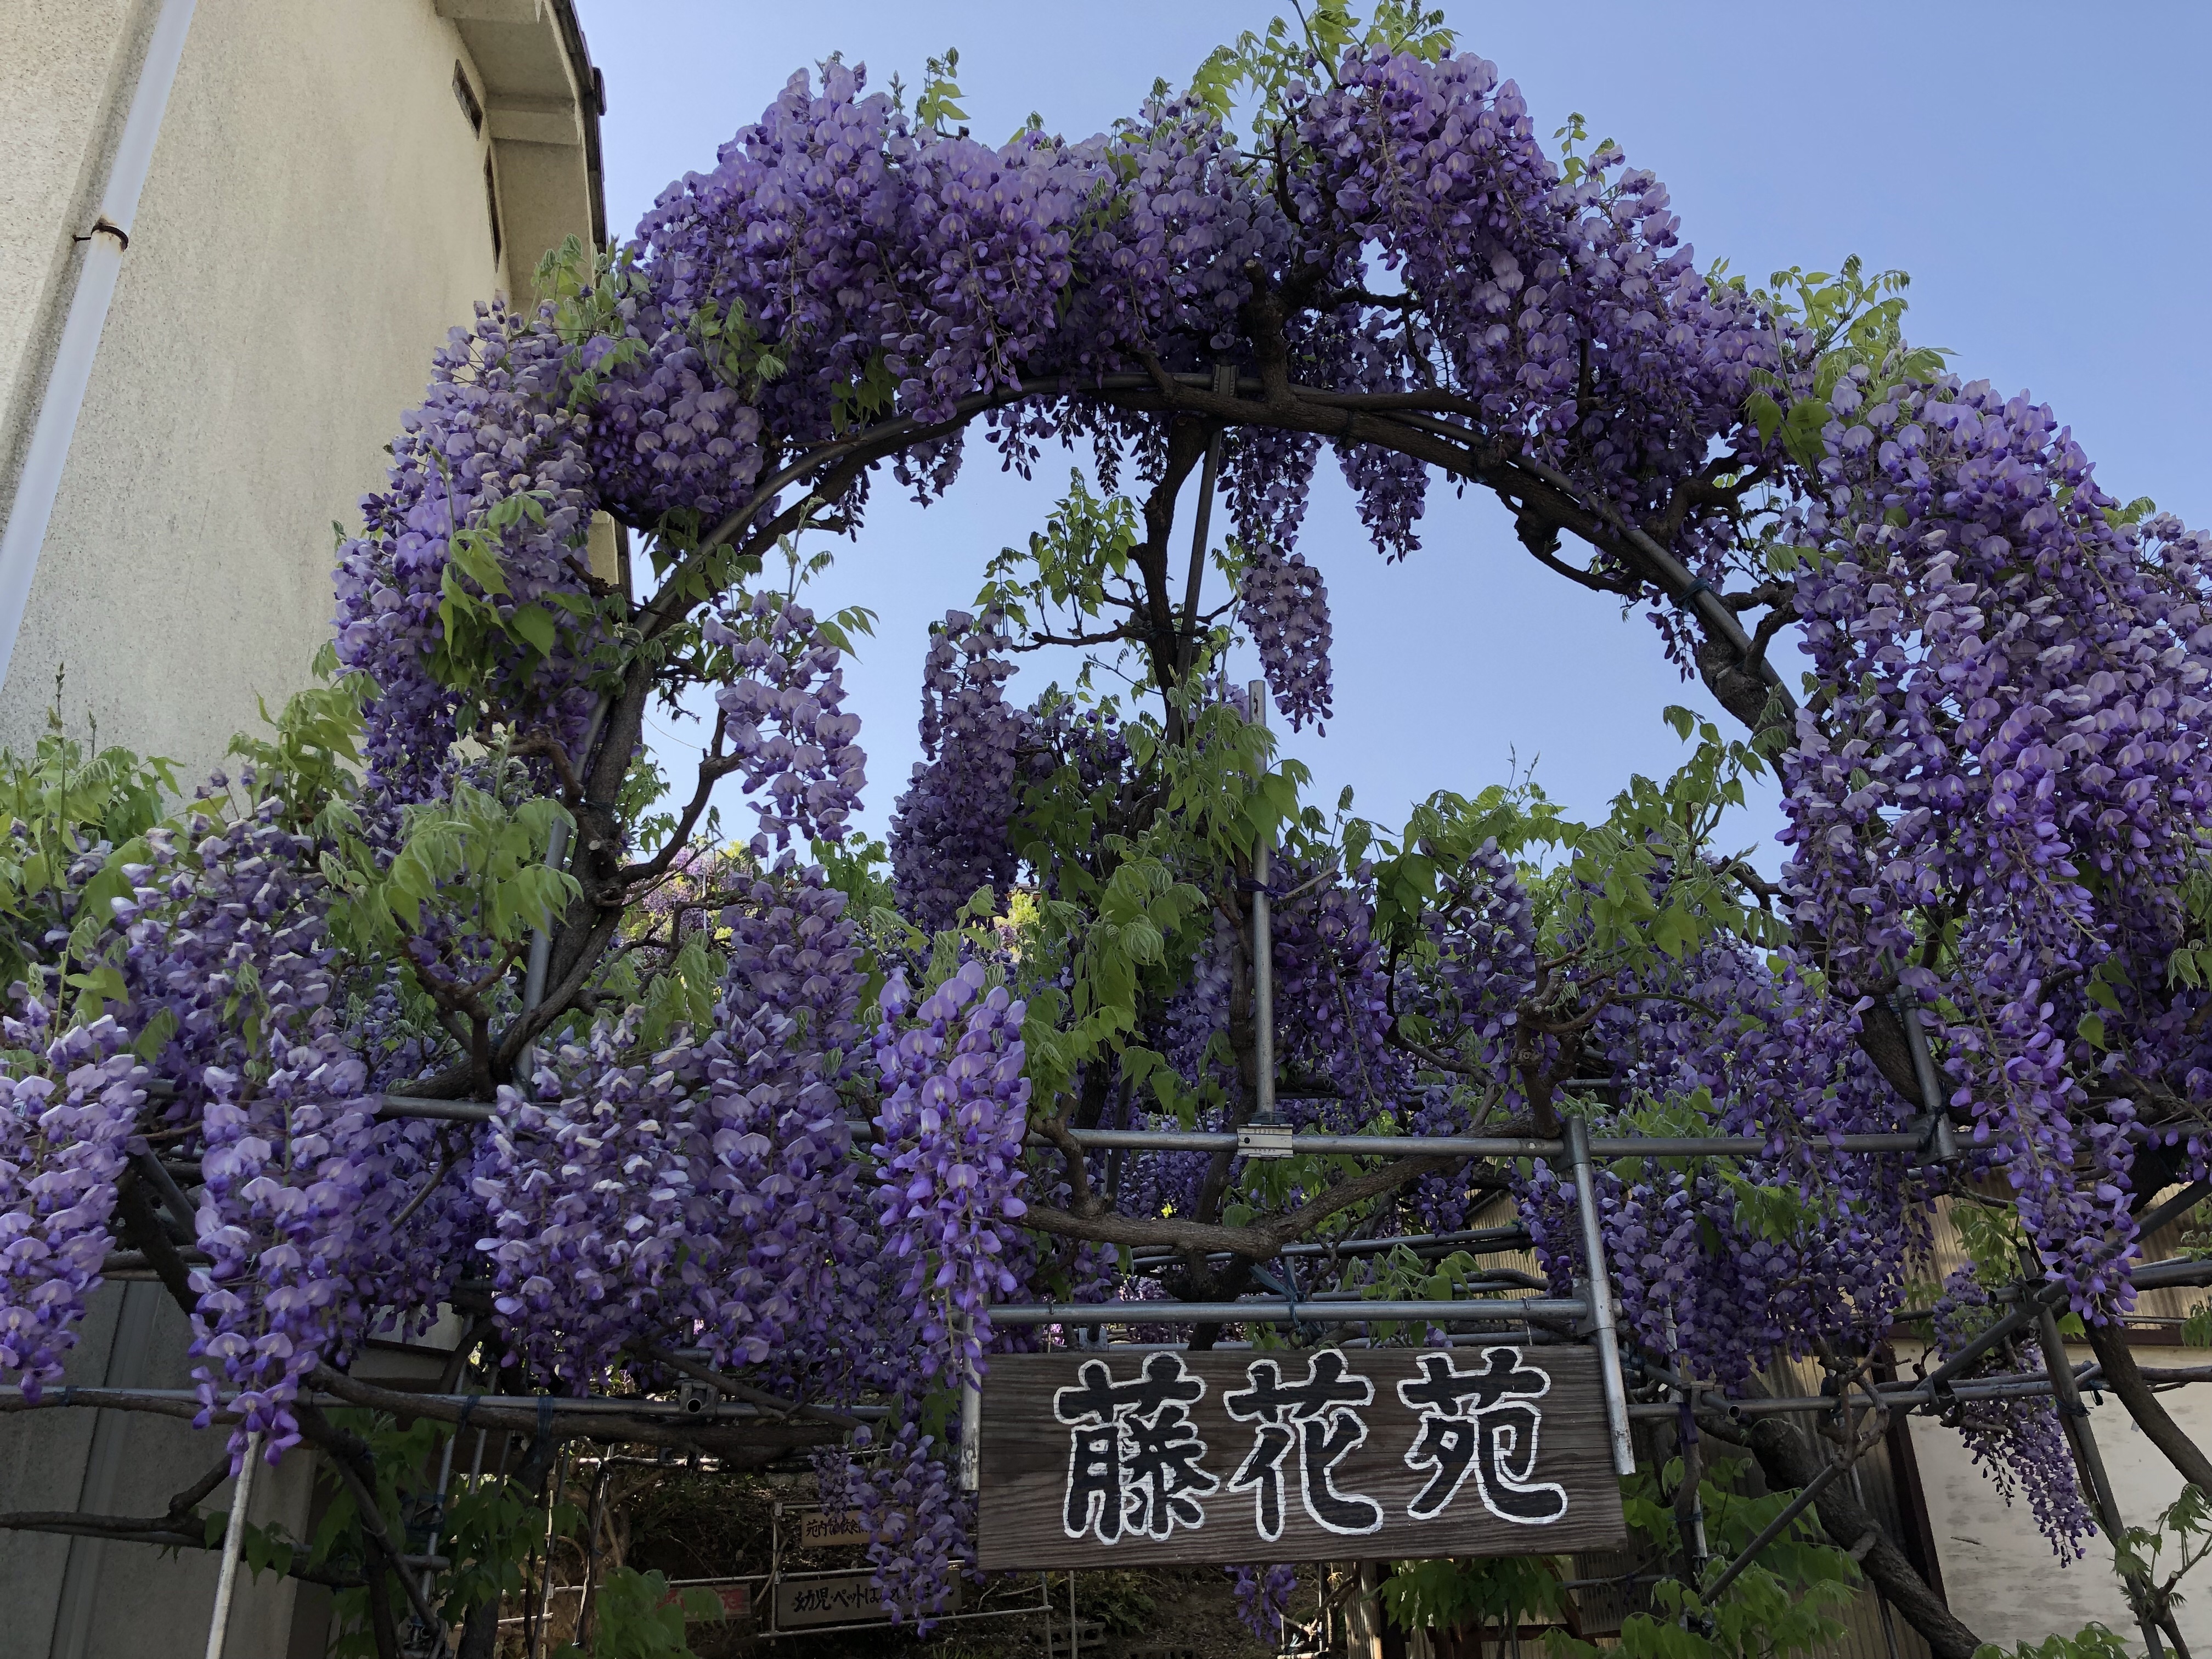 岡山県笠岡市にある個人が開いた藤園が凄かったです 藤の花の香りに包まれて 一面藤の花です 藤花苑 とうかえん Le Ciel